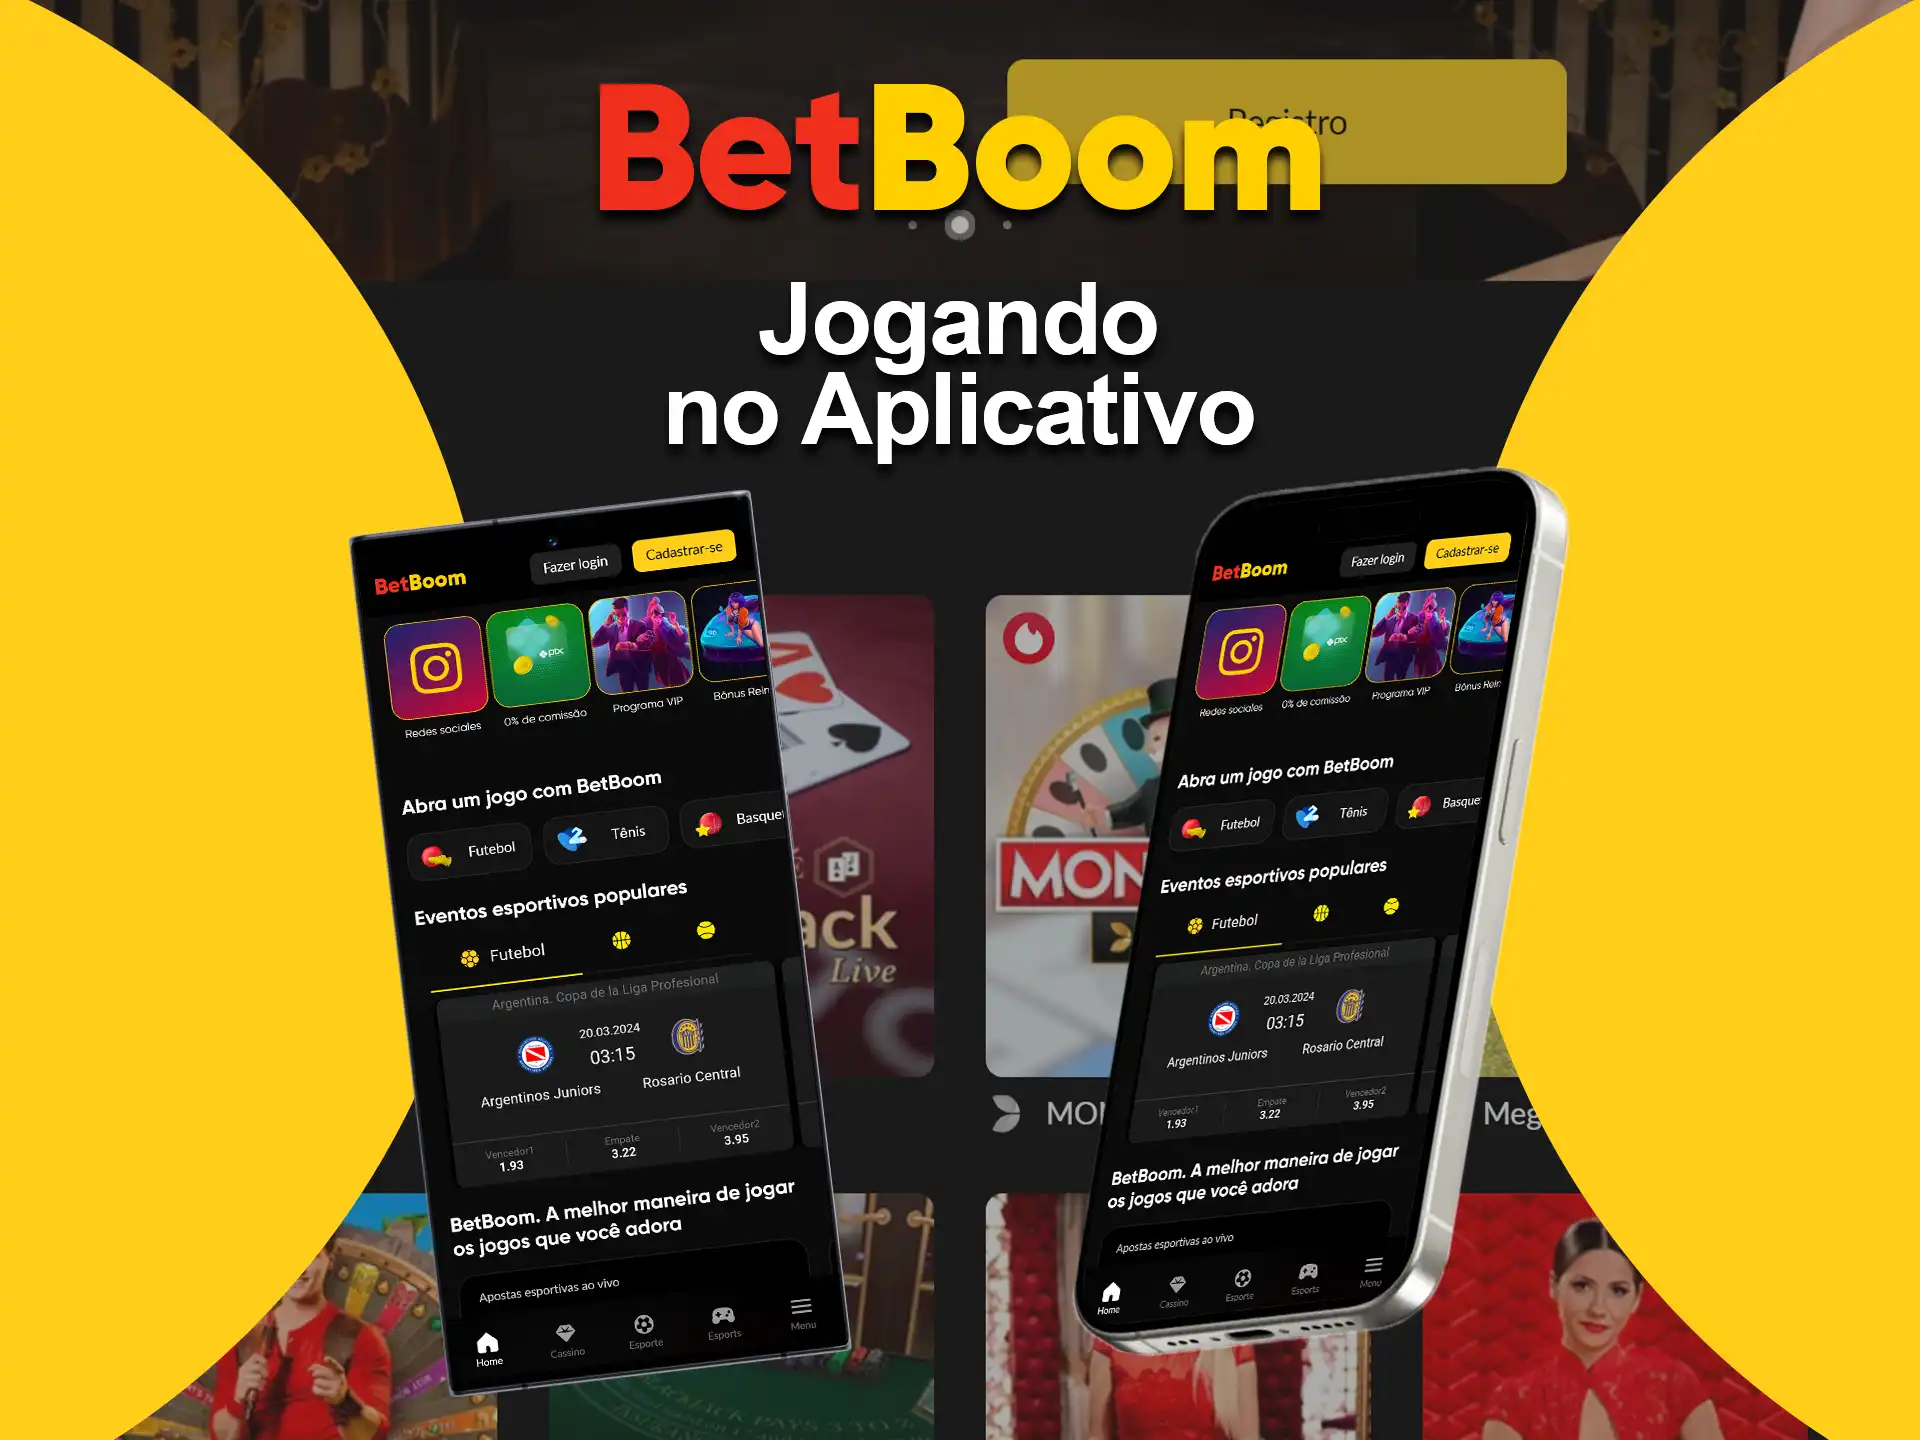 Baixe o app BetBoom para desfrutar de todos os jogos de cassino ao vivo disponíveis no site.